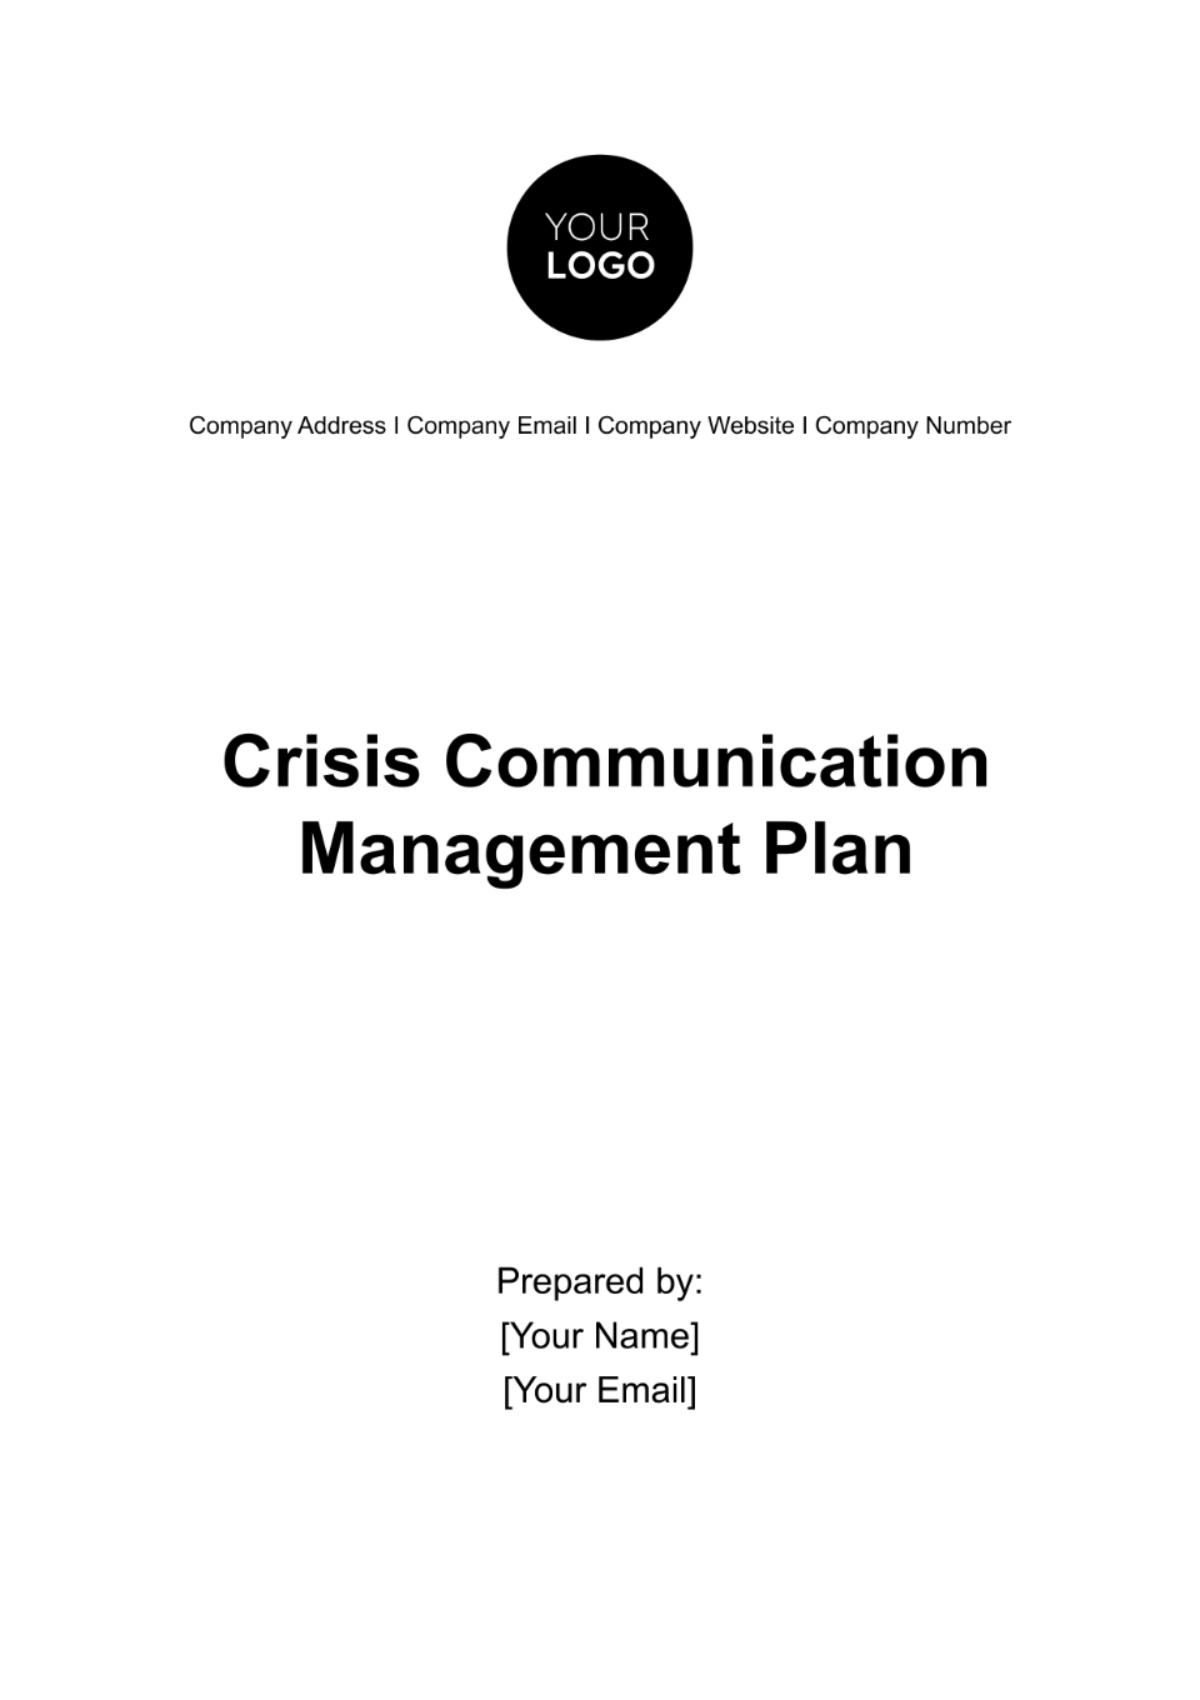 Crisis Communication Management Plan Template